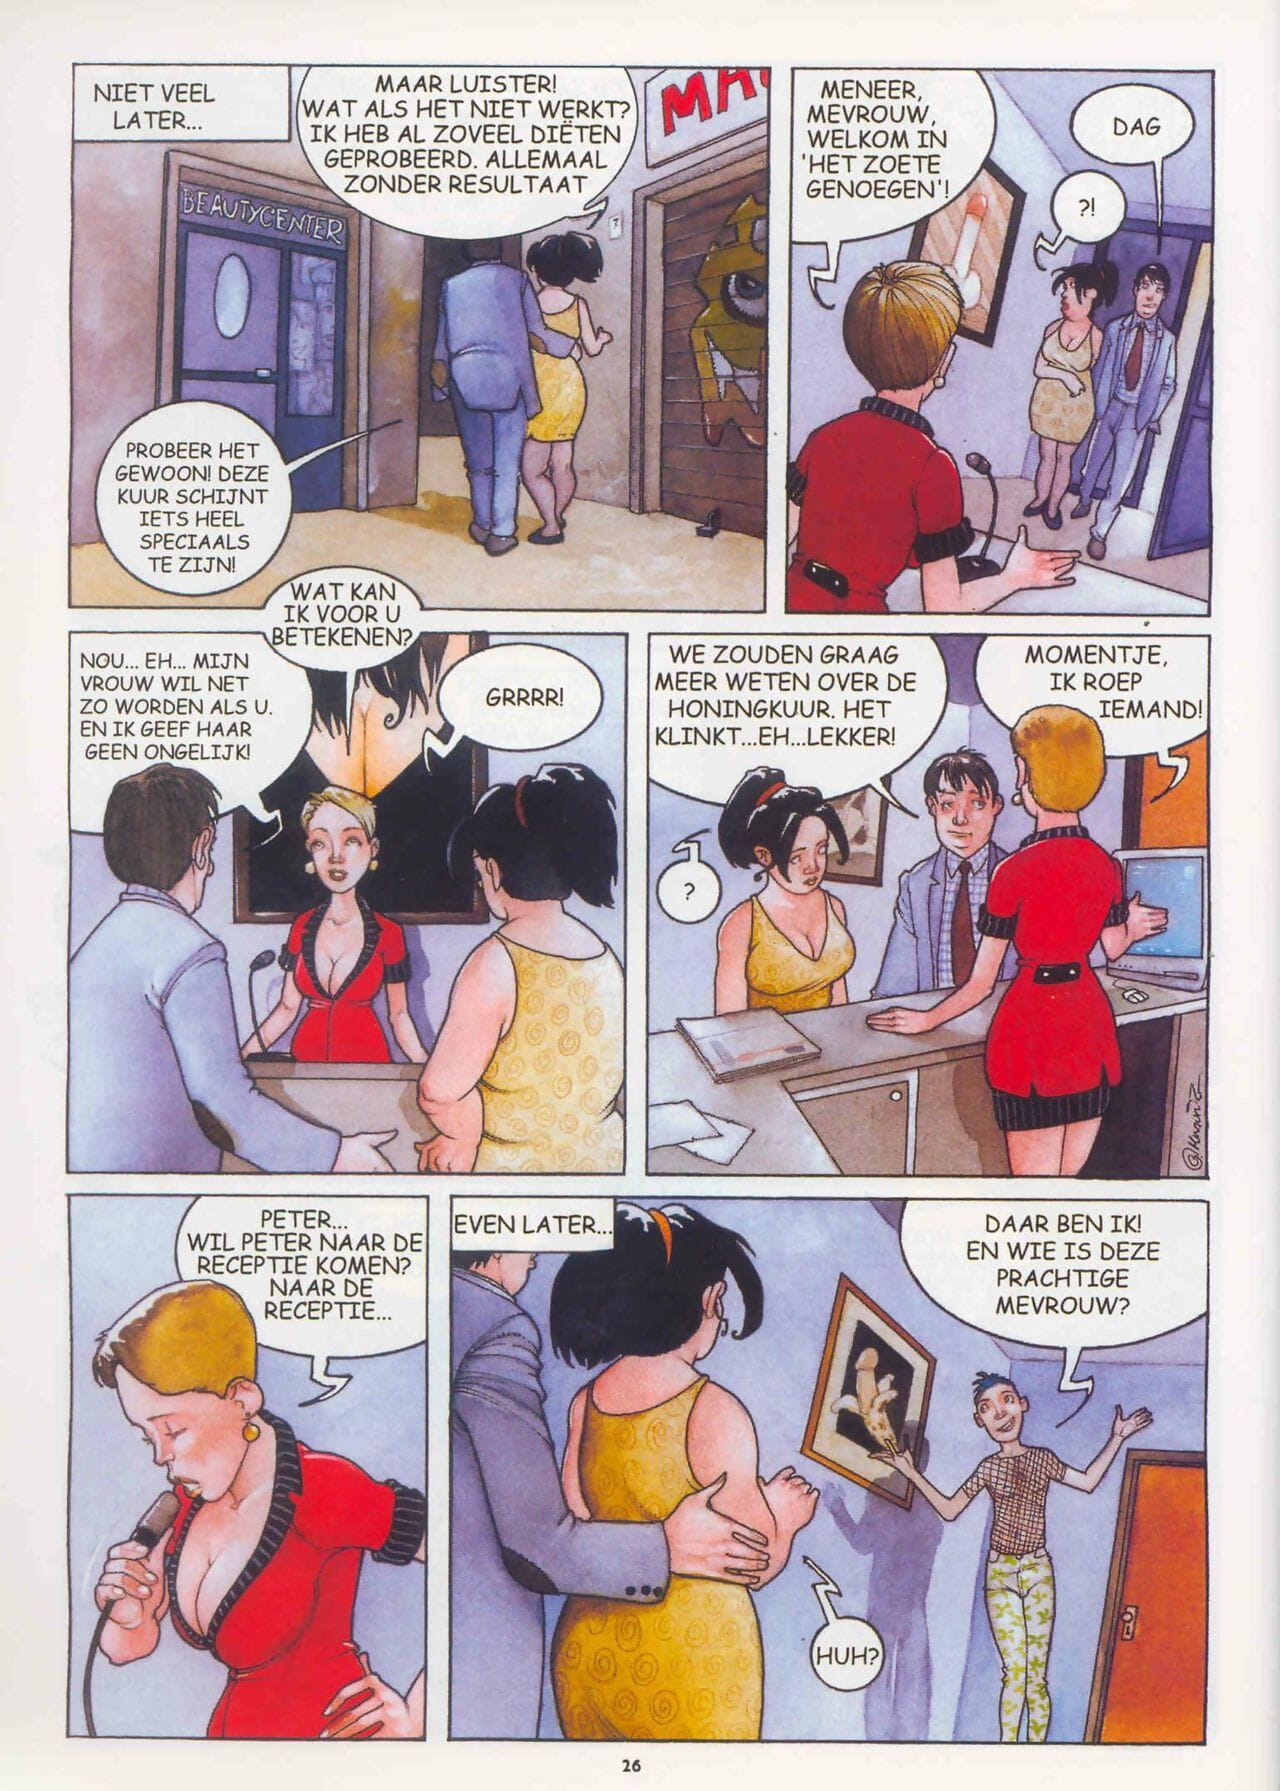 阁楼 漫画 杂志 34 一部分 2 page 1